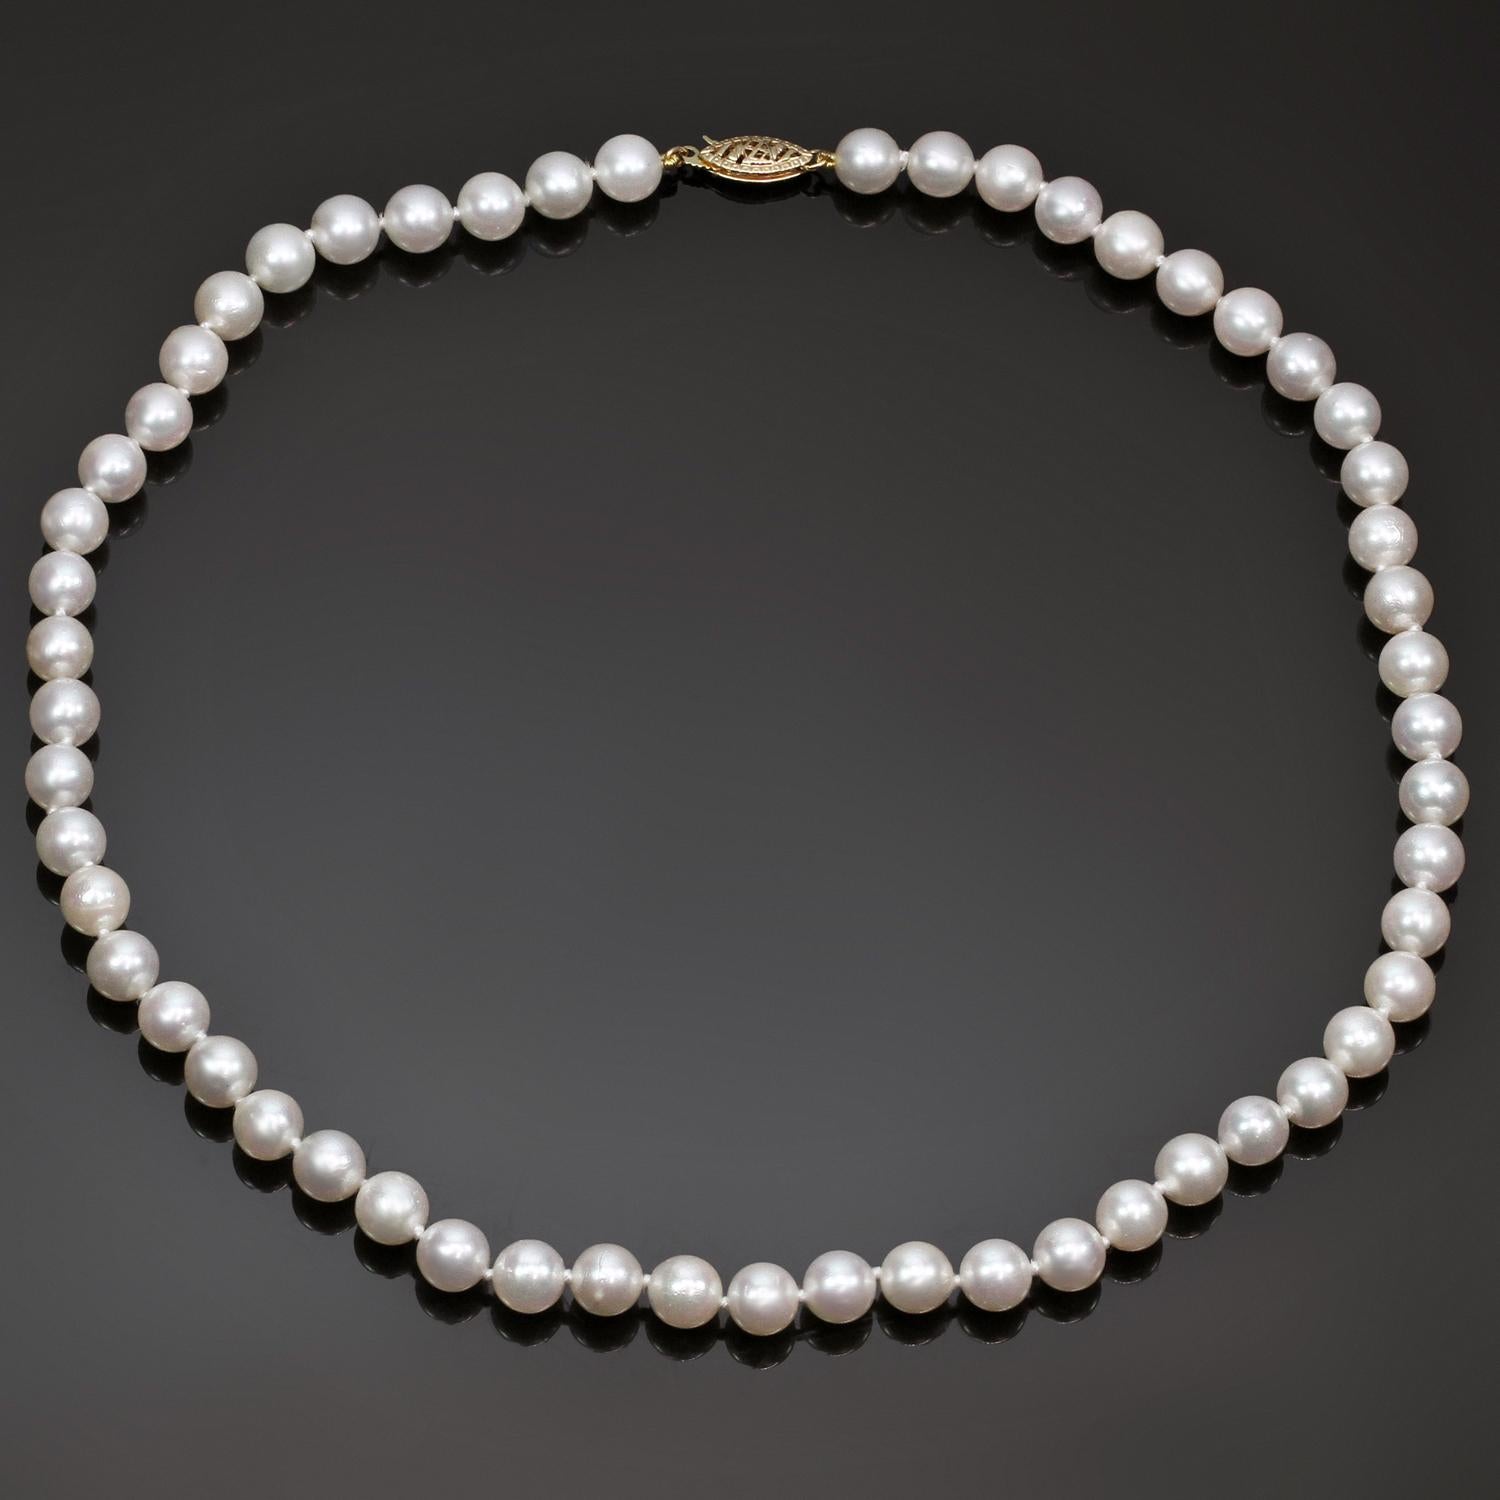 Un rang classique de perles de culture rondes authentiques de 7,0 mm de couleur blanc rosé et d'un grand lustre, une sélection uniforme avec très peu d'imperfections. Le tout est complété par un fermoir filigrane ornemental en or jaune 14k.